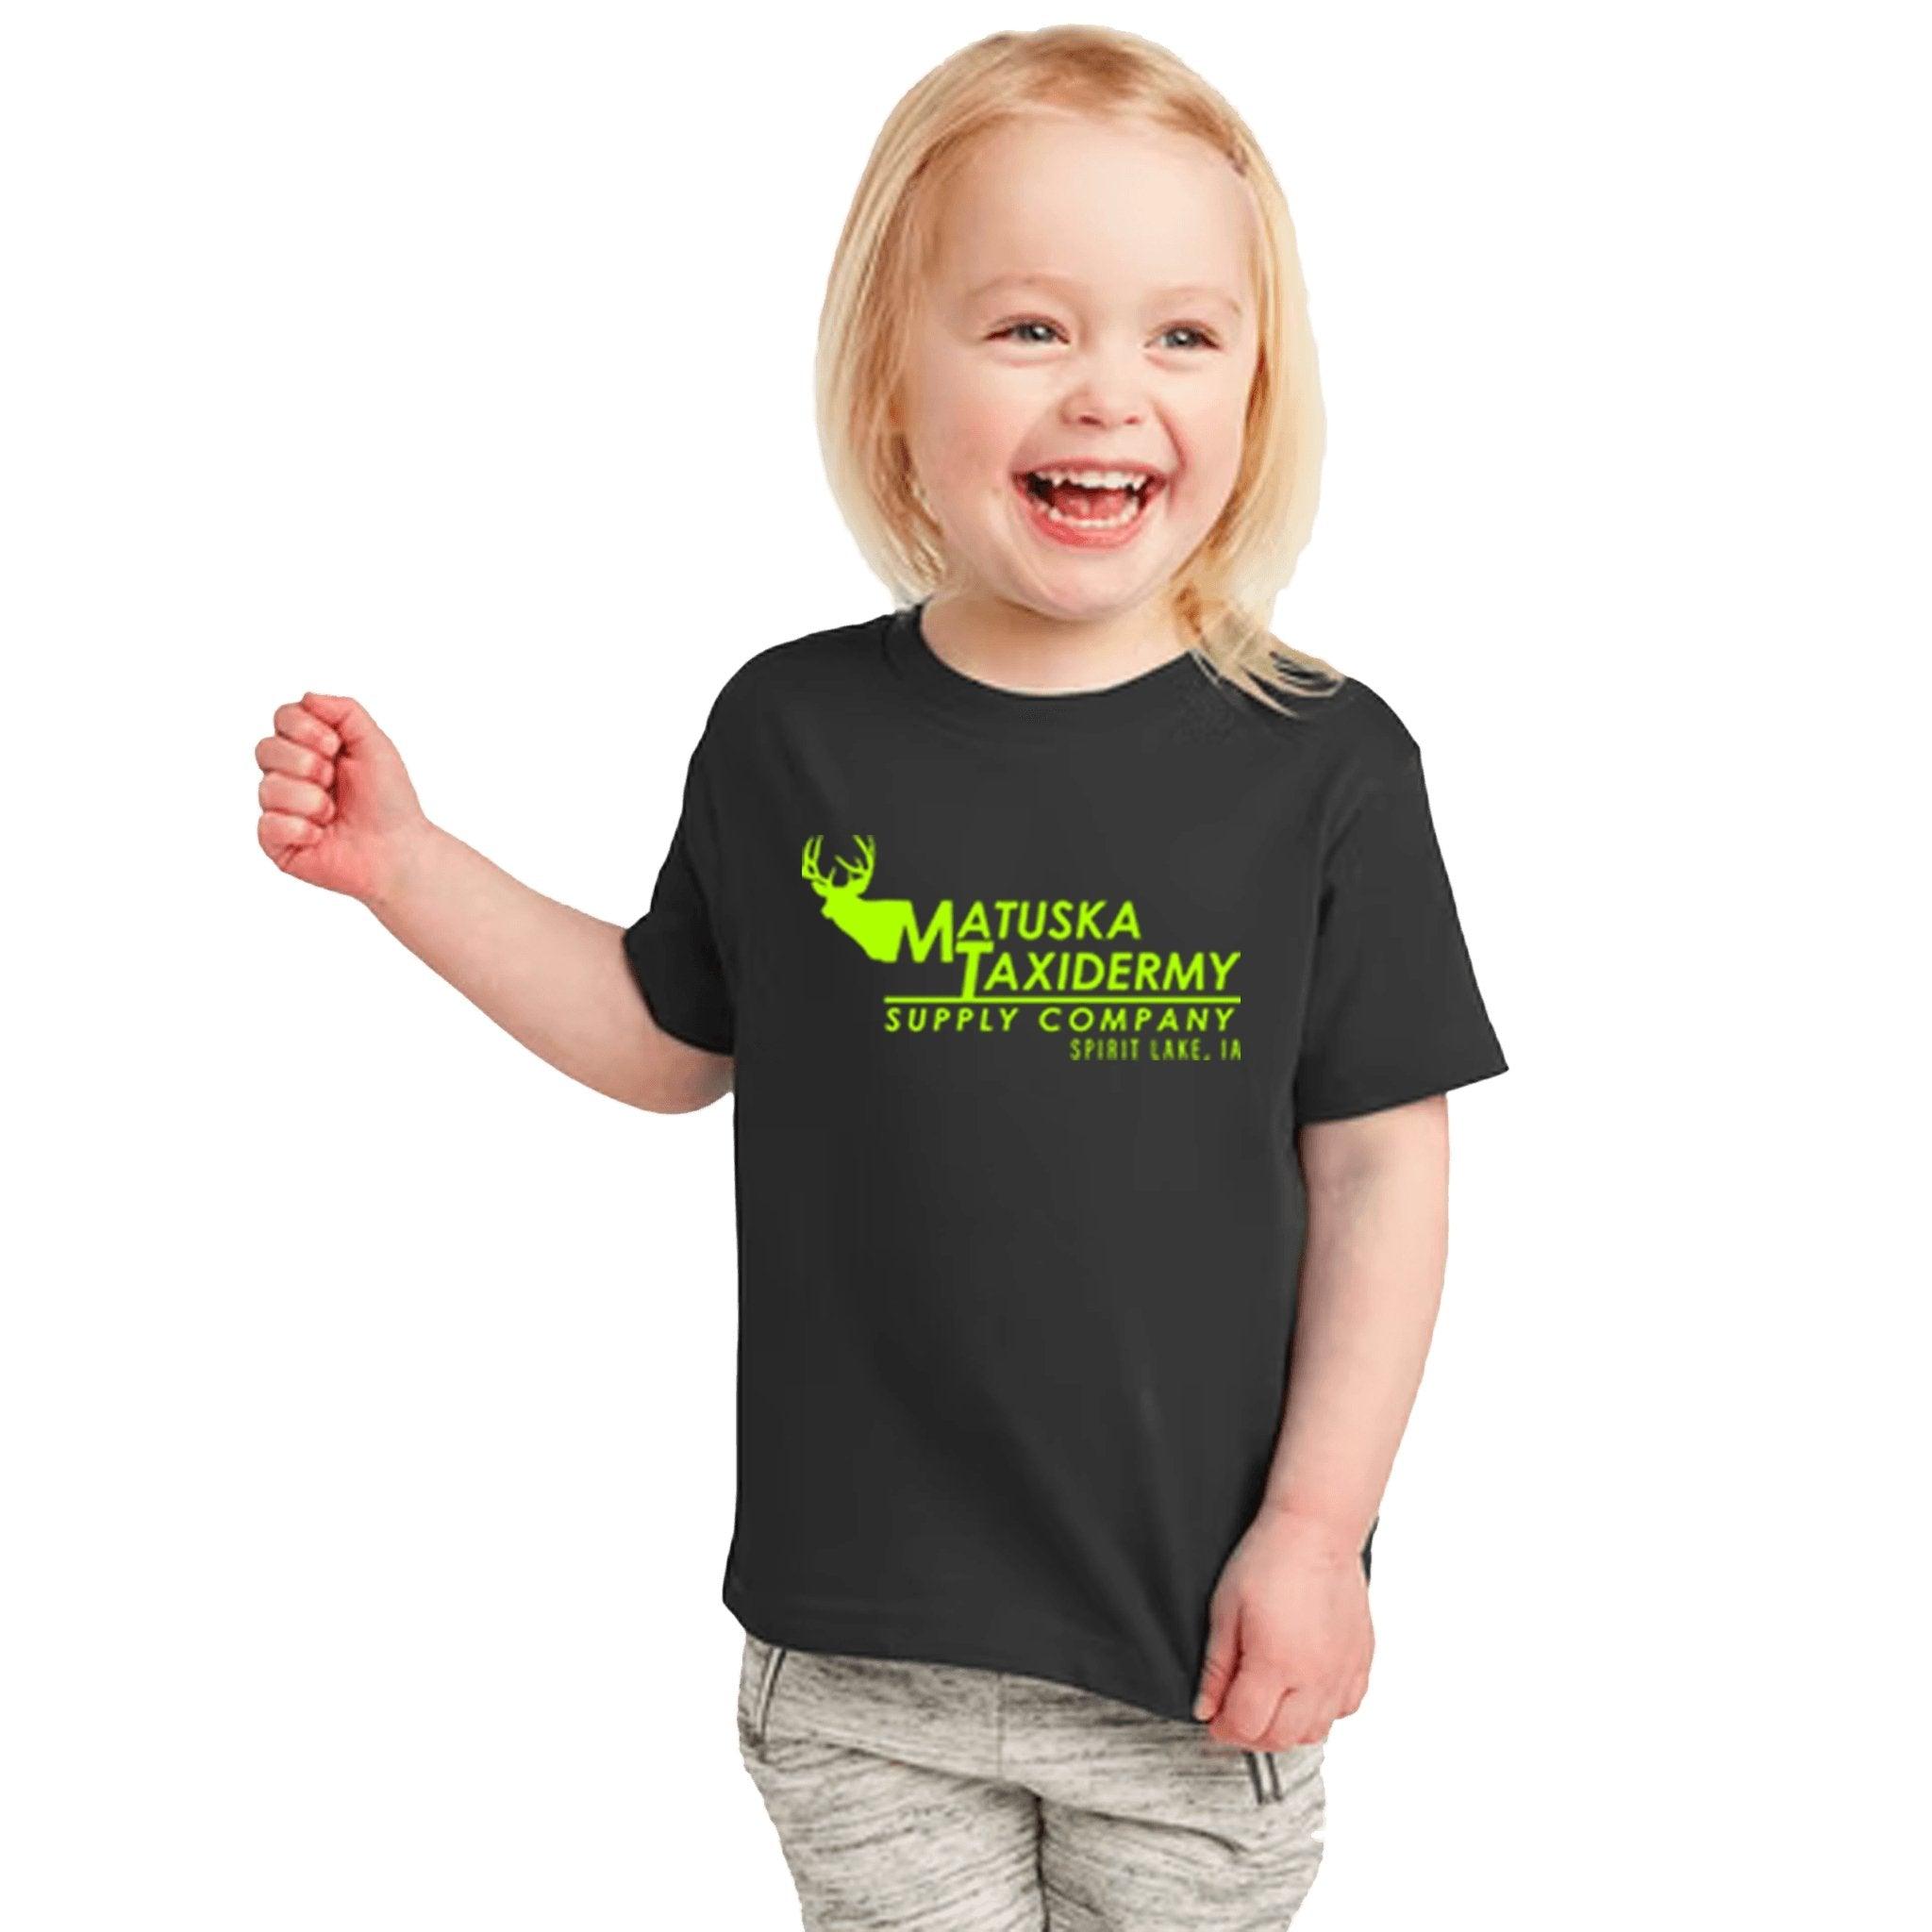 Kids Matuska Taxidermy T-Shirt - Matuska Taxidermy Supply Company